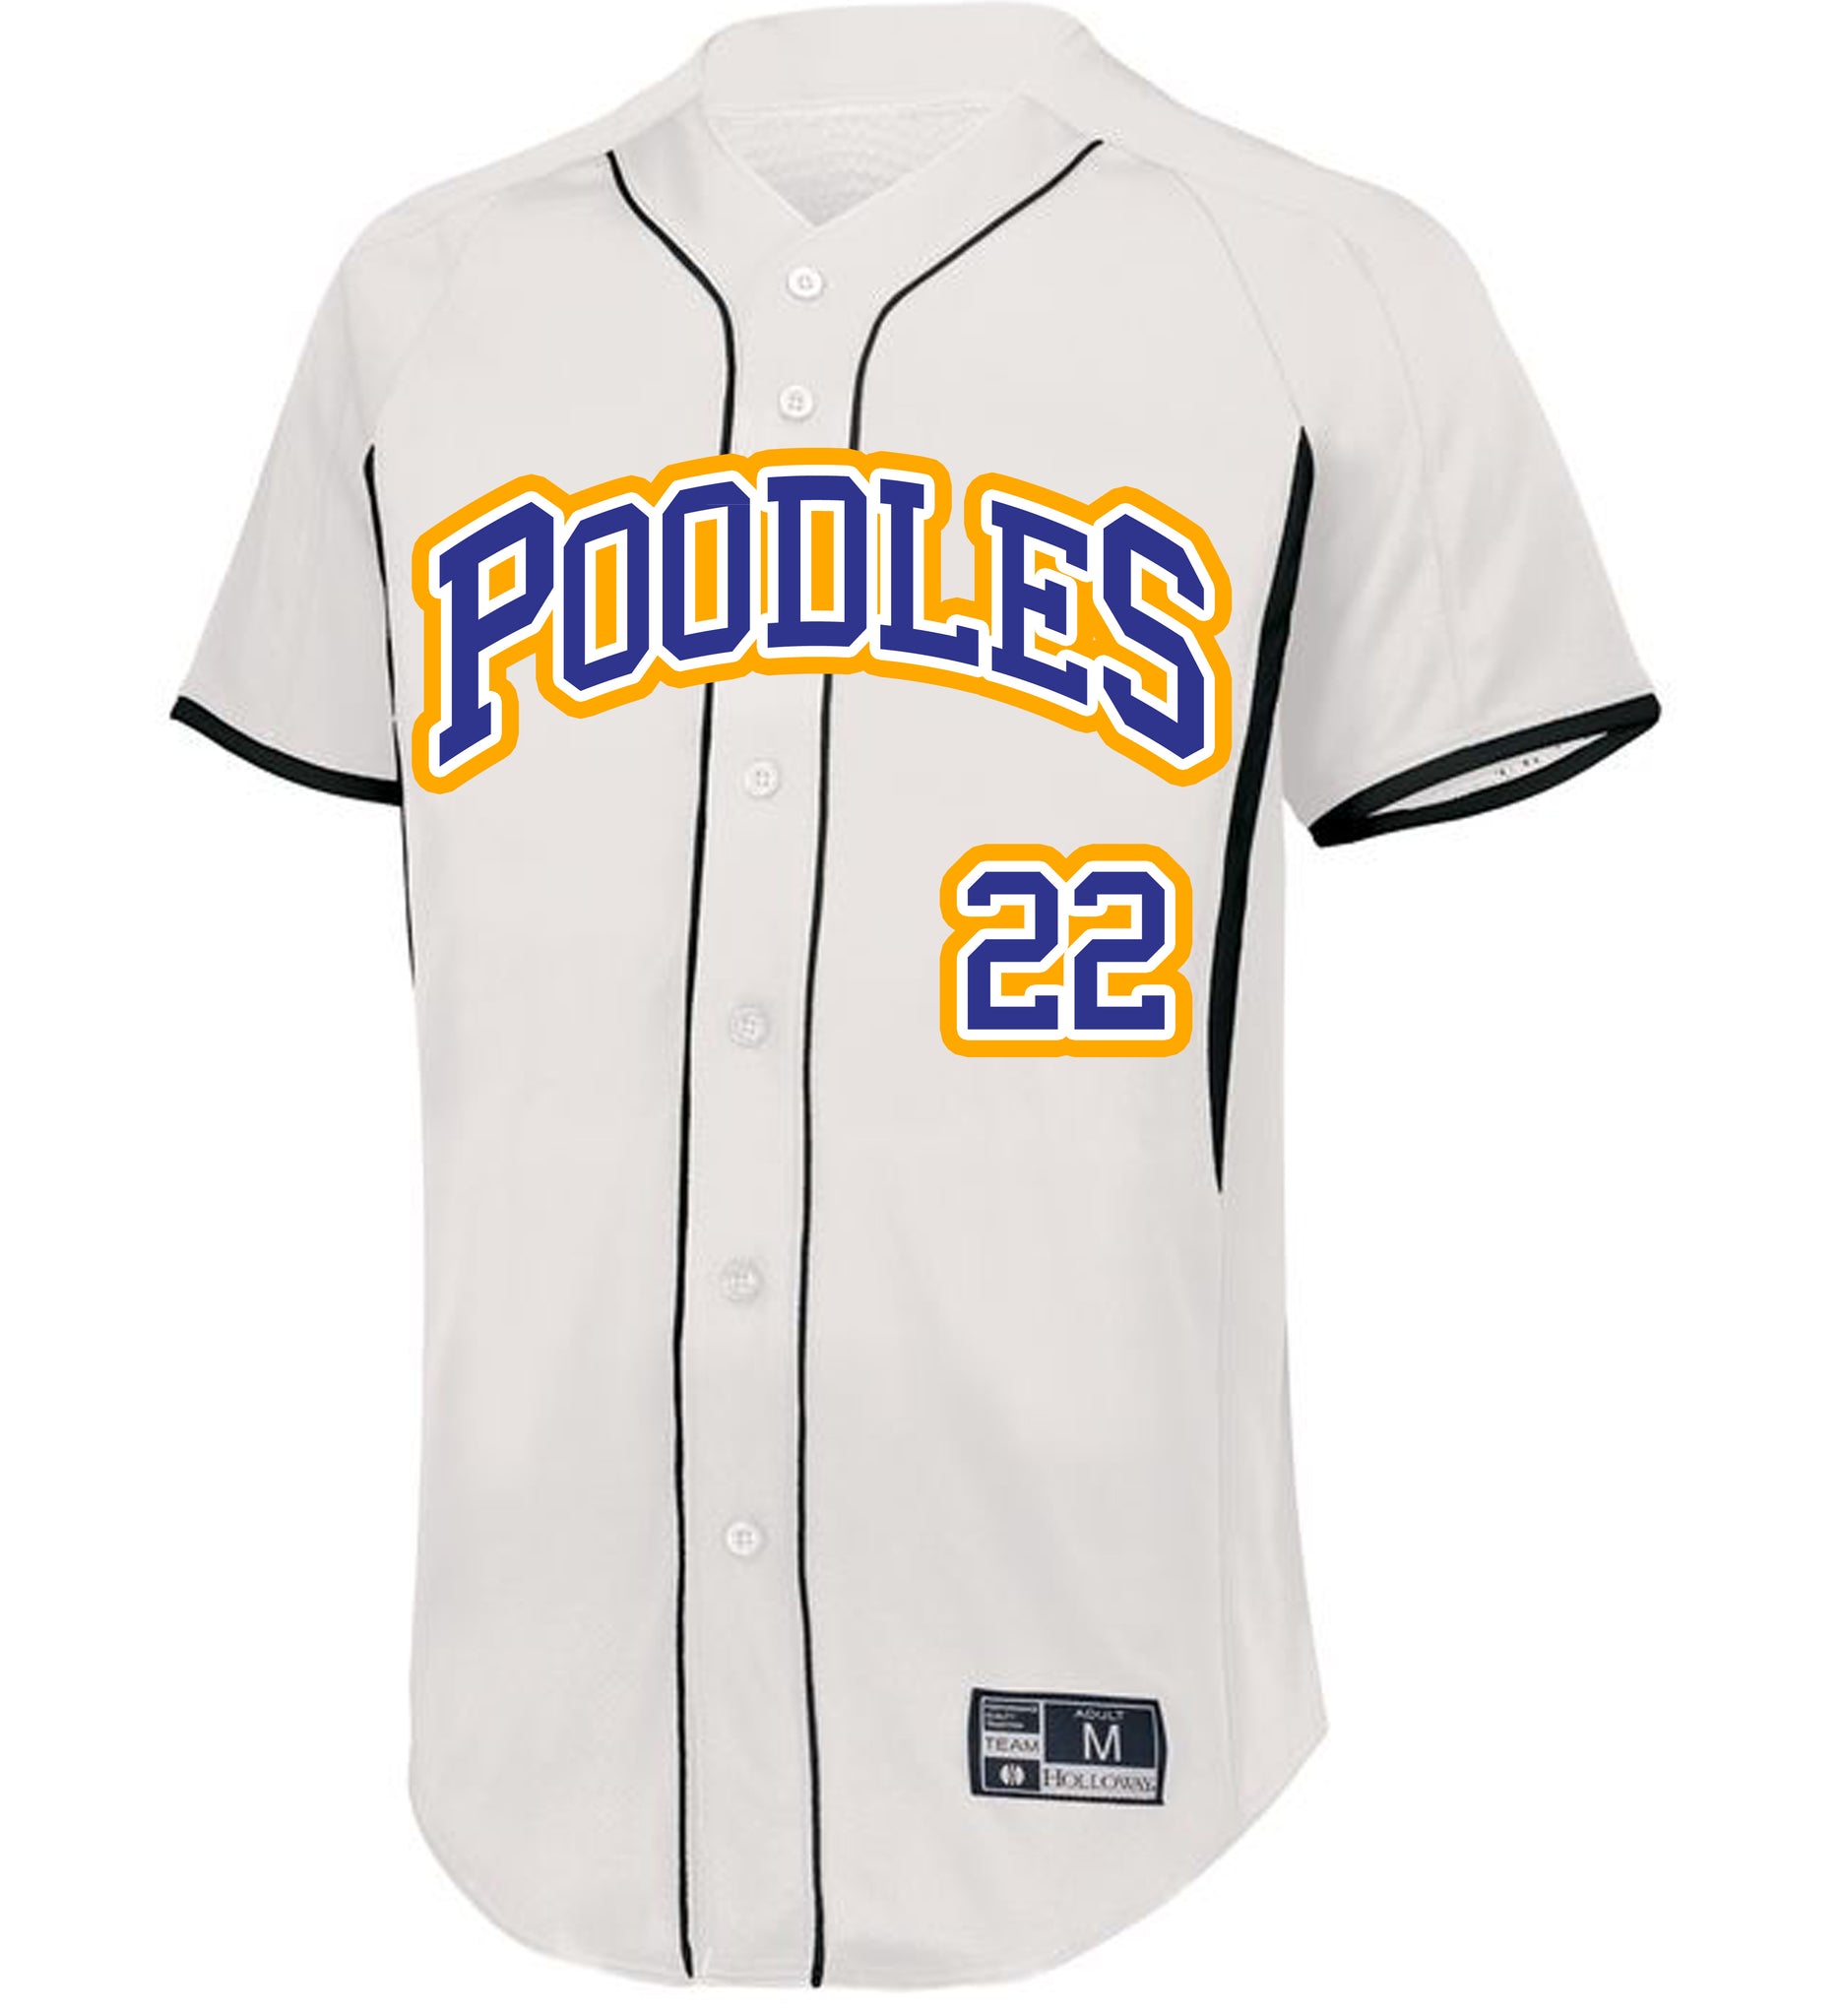 Kappa Sig Personalized White Mesh Baseball Jersey